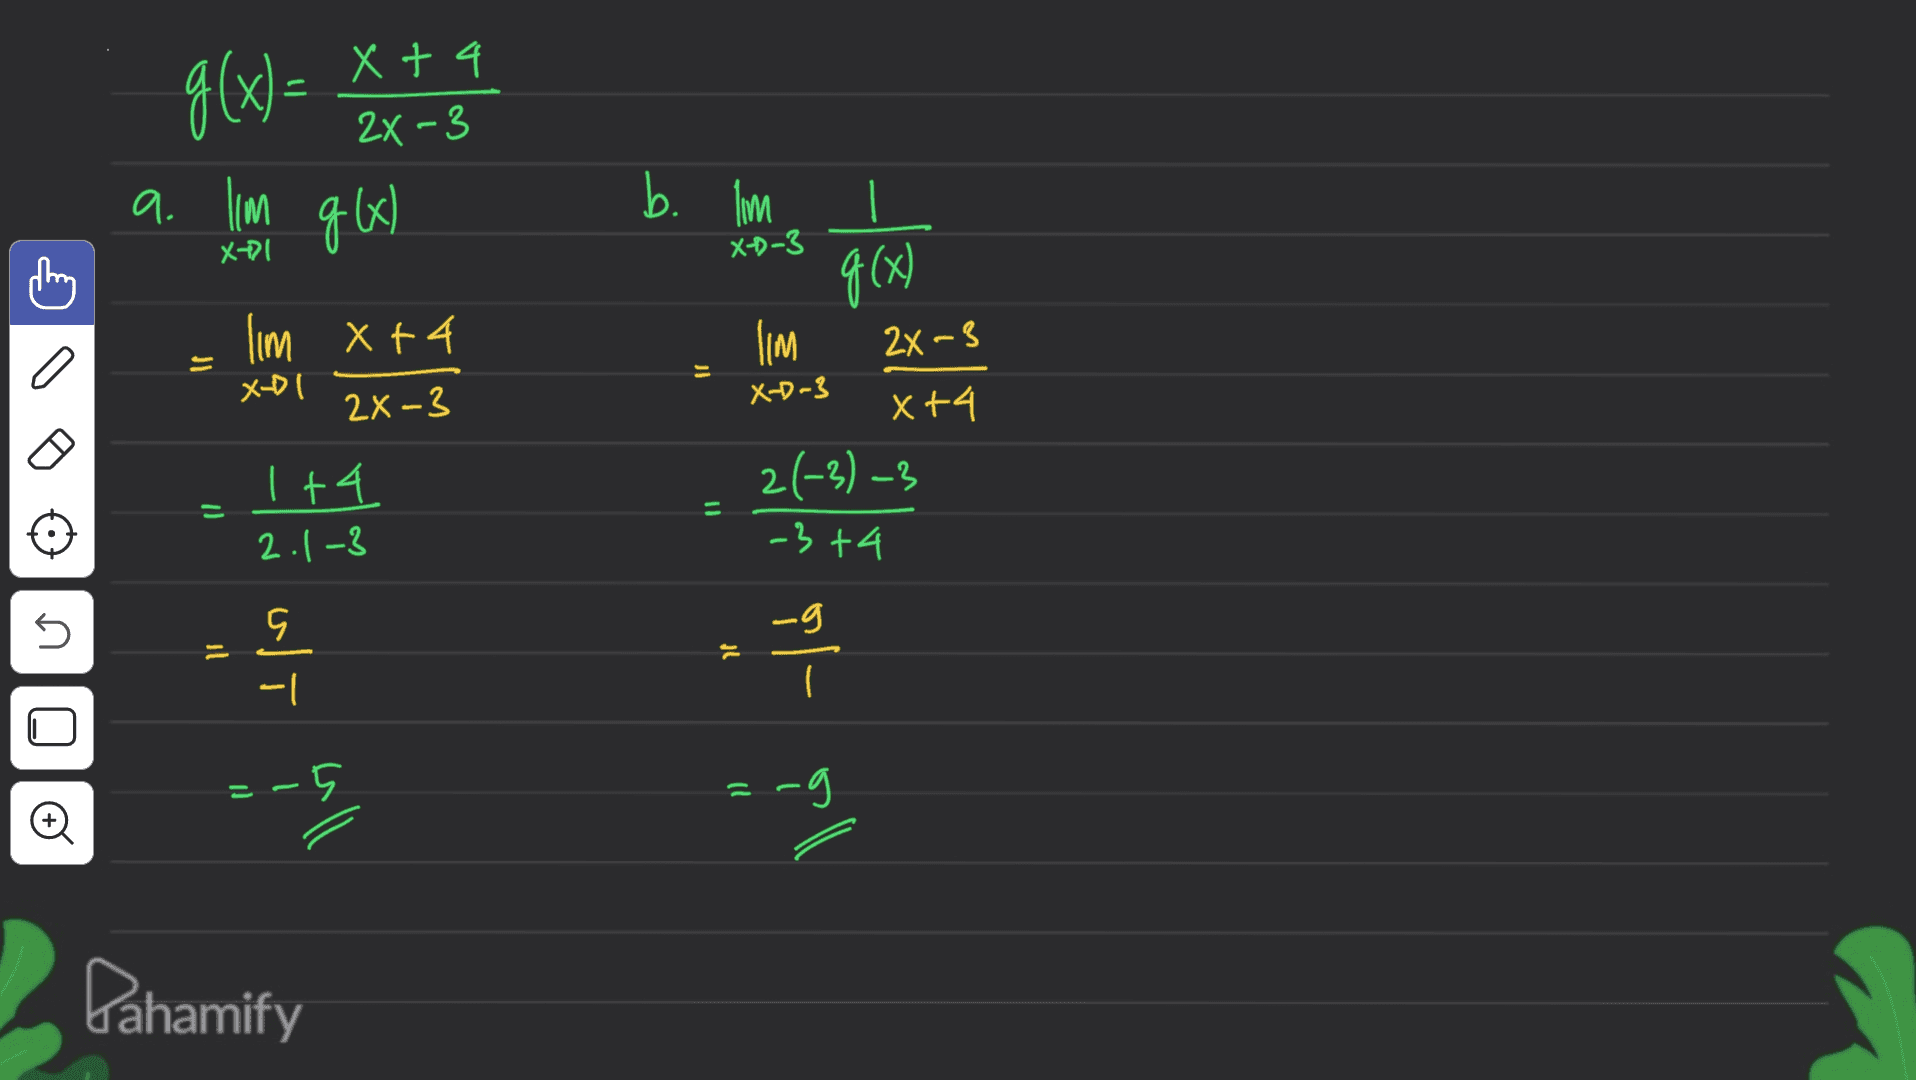 f(x)= Xt4 2X -3 1 a. Ilm qk) 서기 xD-3 lim X+4 b. b. im (x) (IM xt4 2(-3) -3 2X ~3 이 2X-3 X-D-3 1+4 2.1-3 Il -3+4 U g 9. - I' DI④ ) - 2 -9 / 왜 Pahamify 